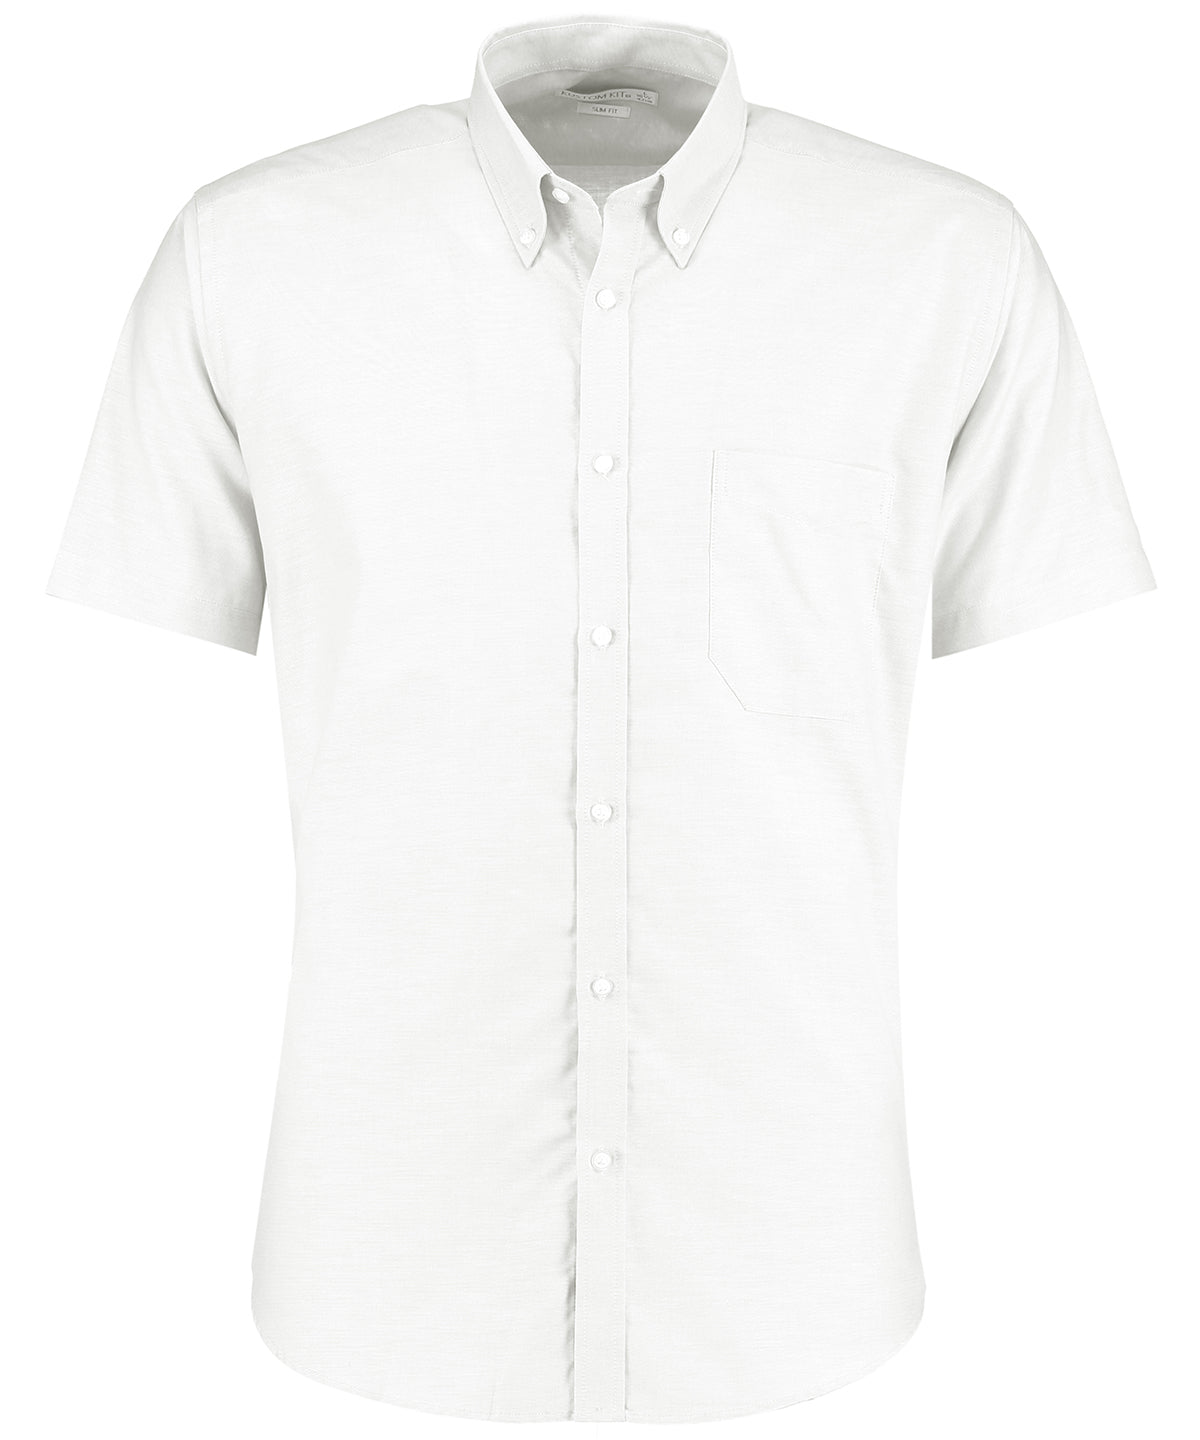 Personalised Shirts - Light Blue Kustom Kit Slim fit workwear Oxford shirt short sleeve